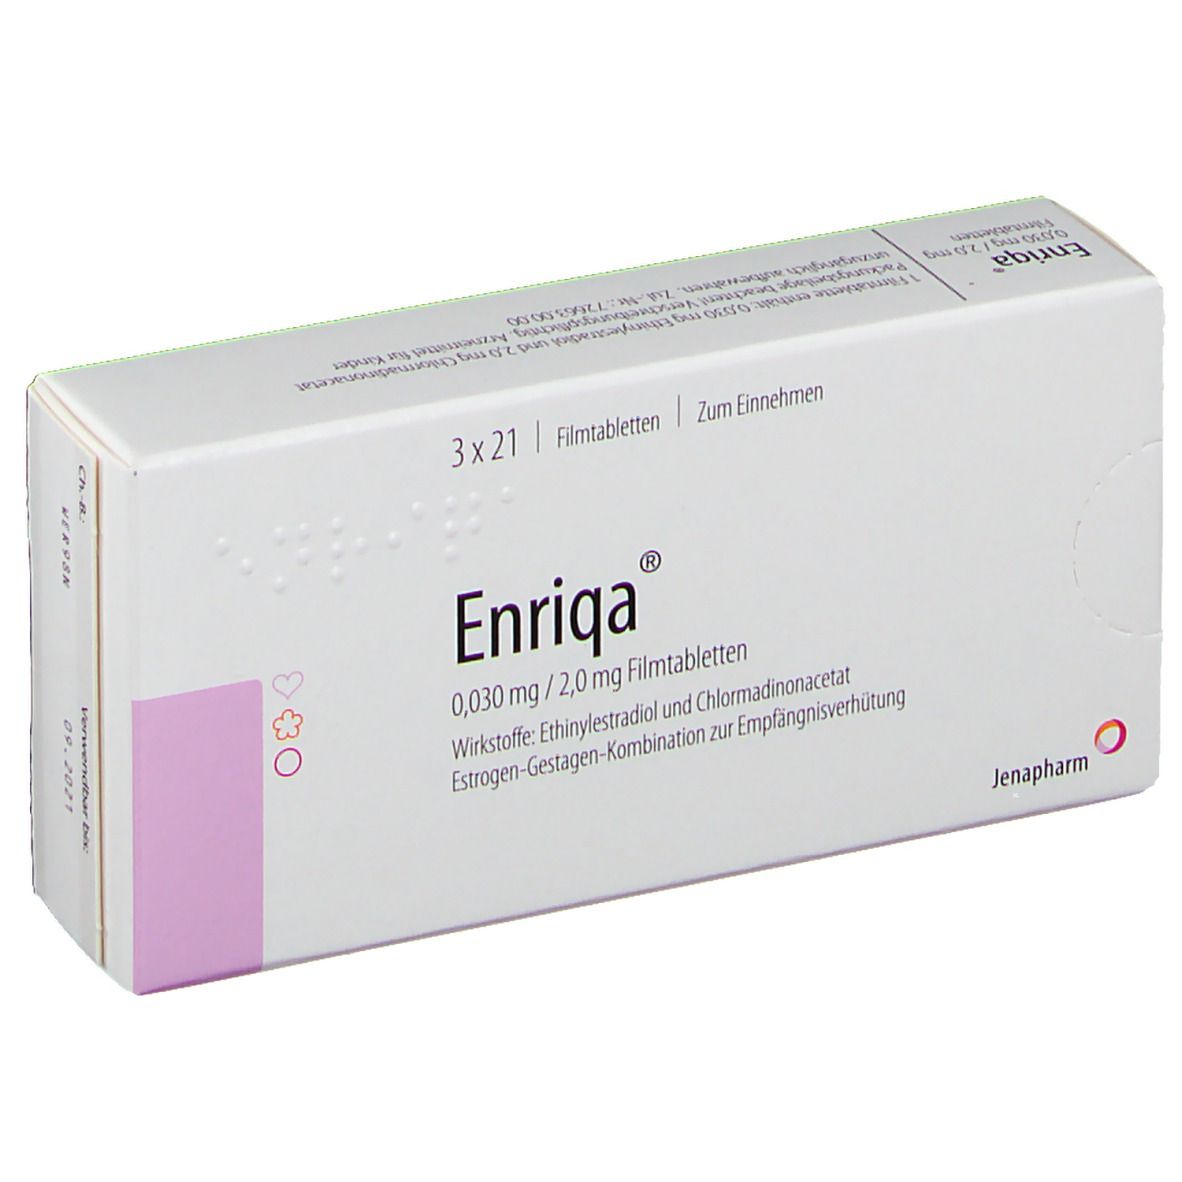 Enriqa® 0,030 mg/2,0 mg